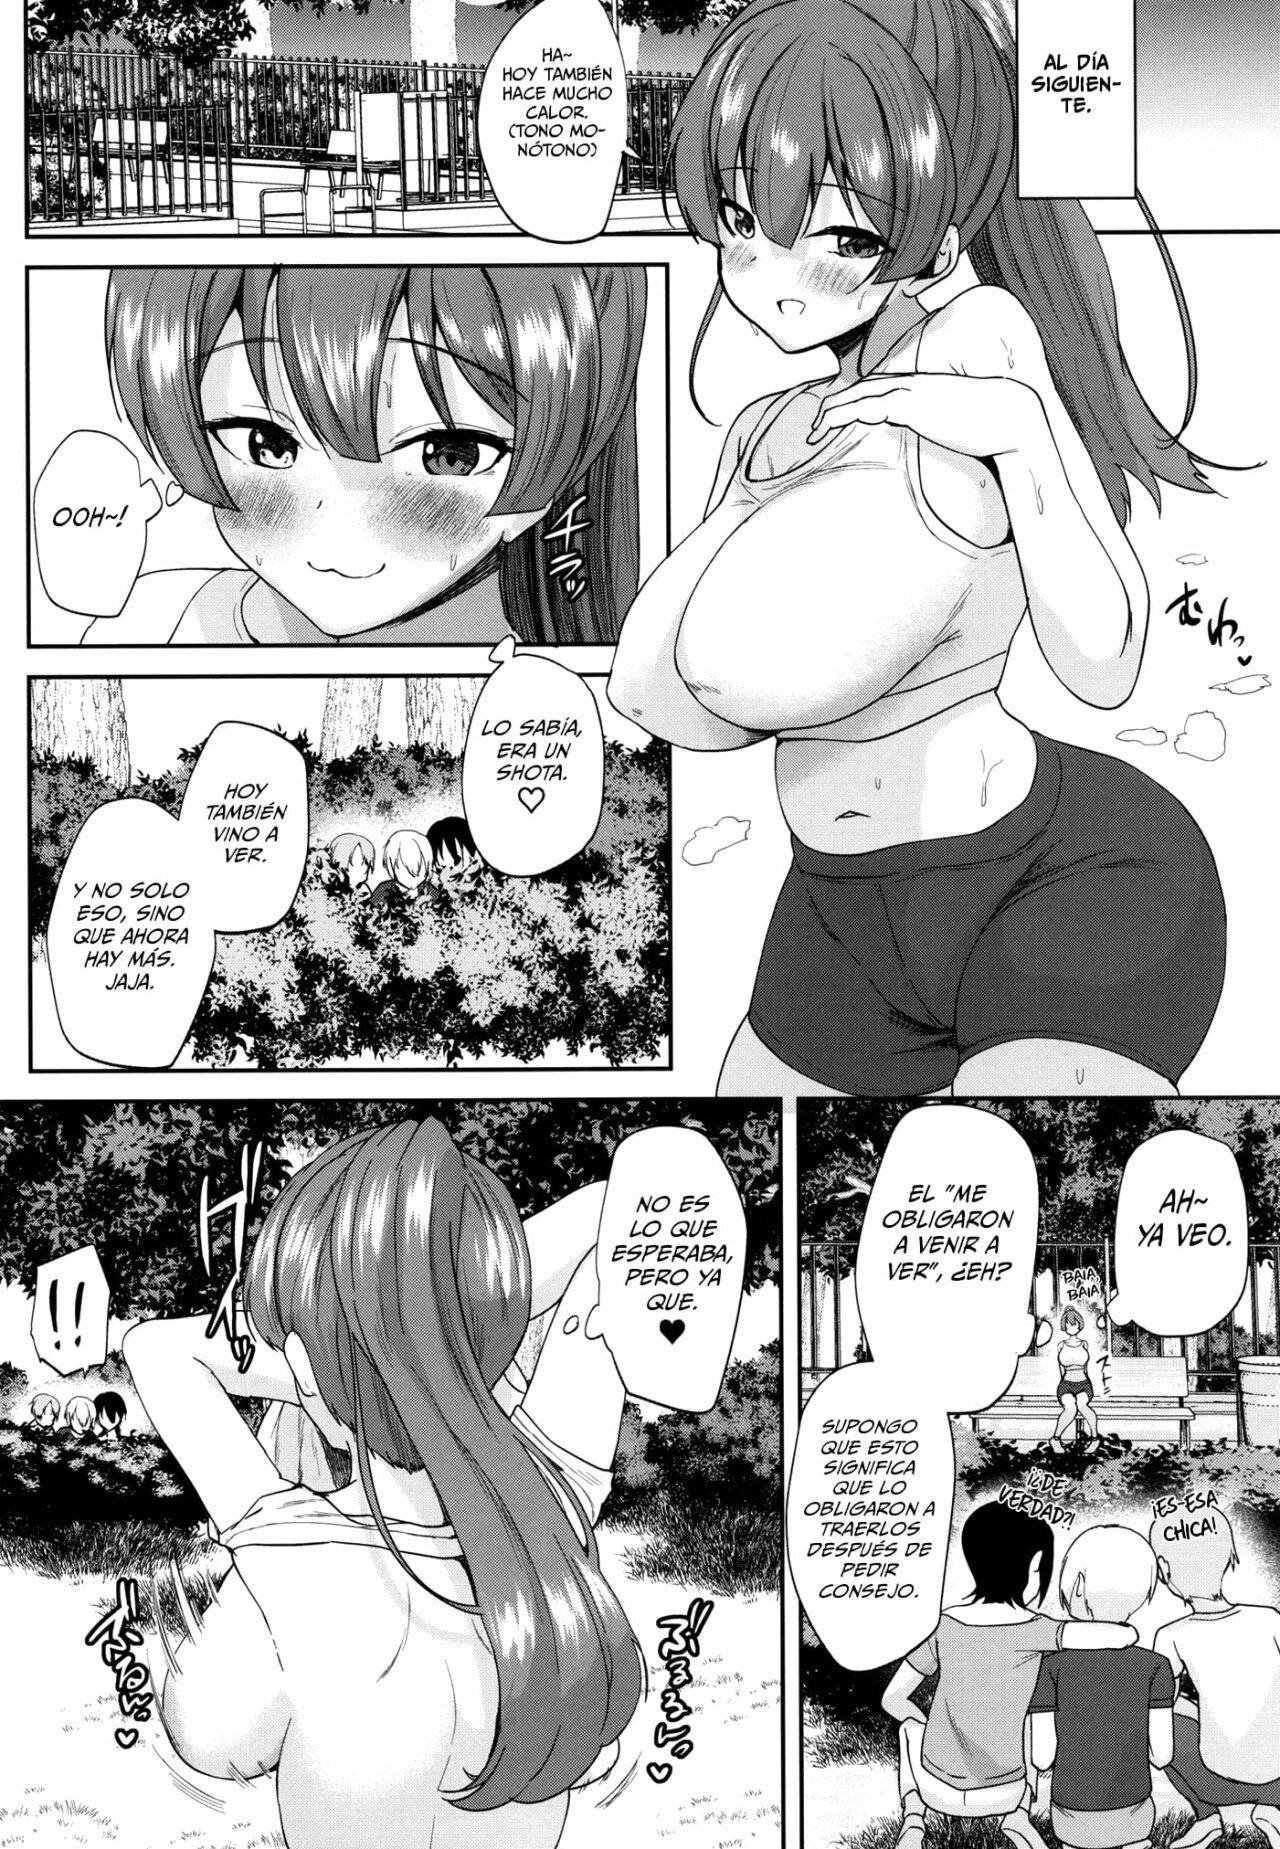 Senchou no Ecchi na Manga - 7